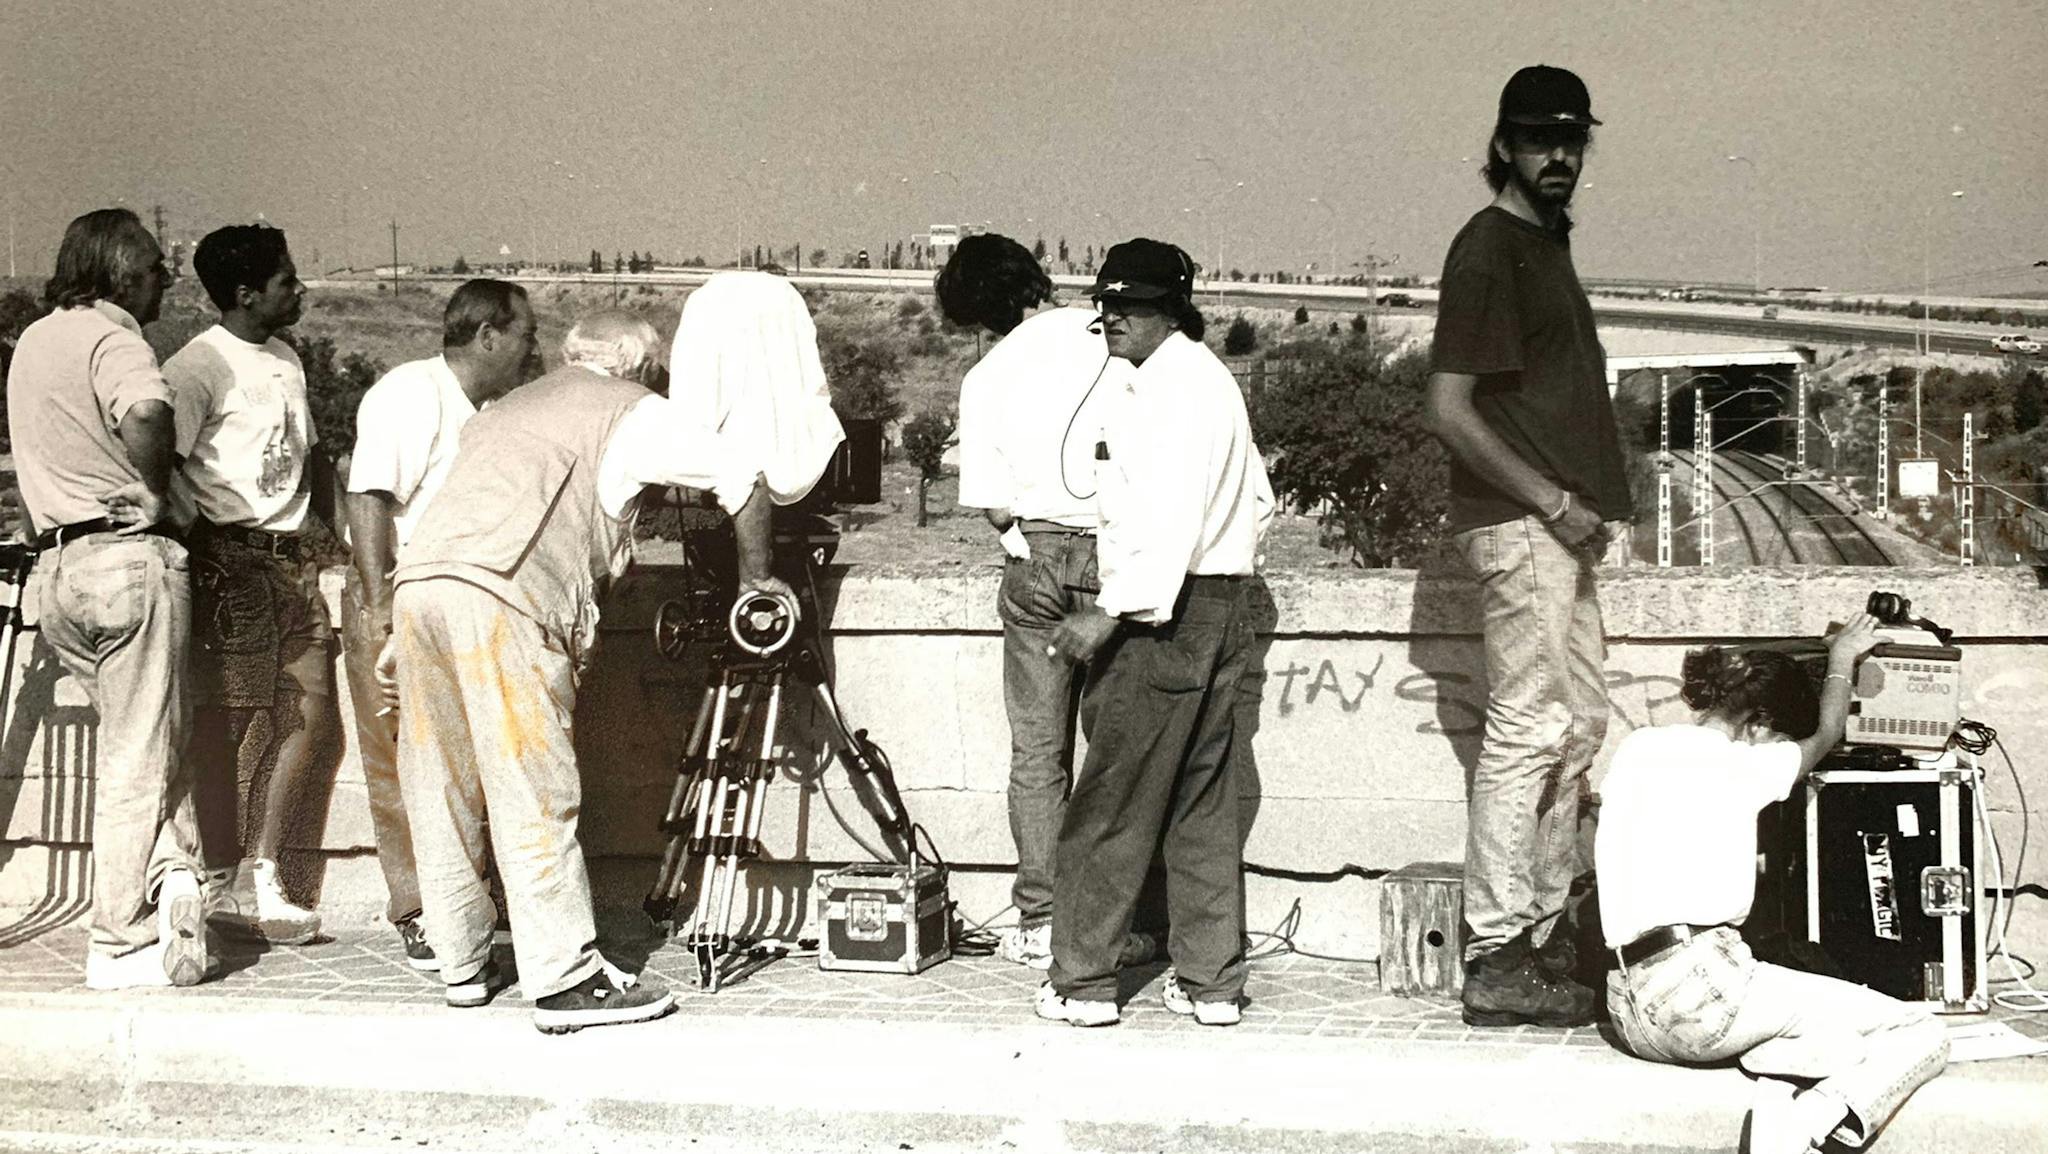 Fotografía del rodaje, con el director de fotografía Alfredo Mayo a la izquierda de la imagen